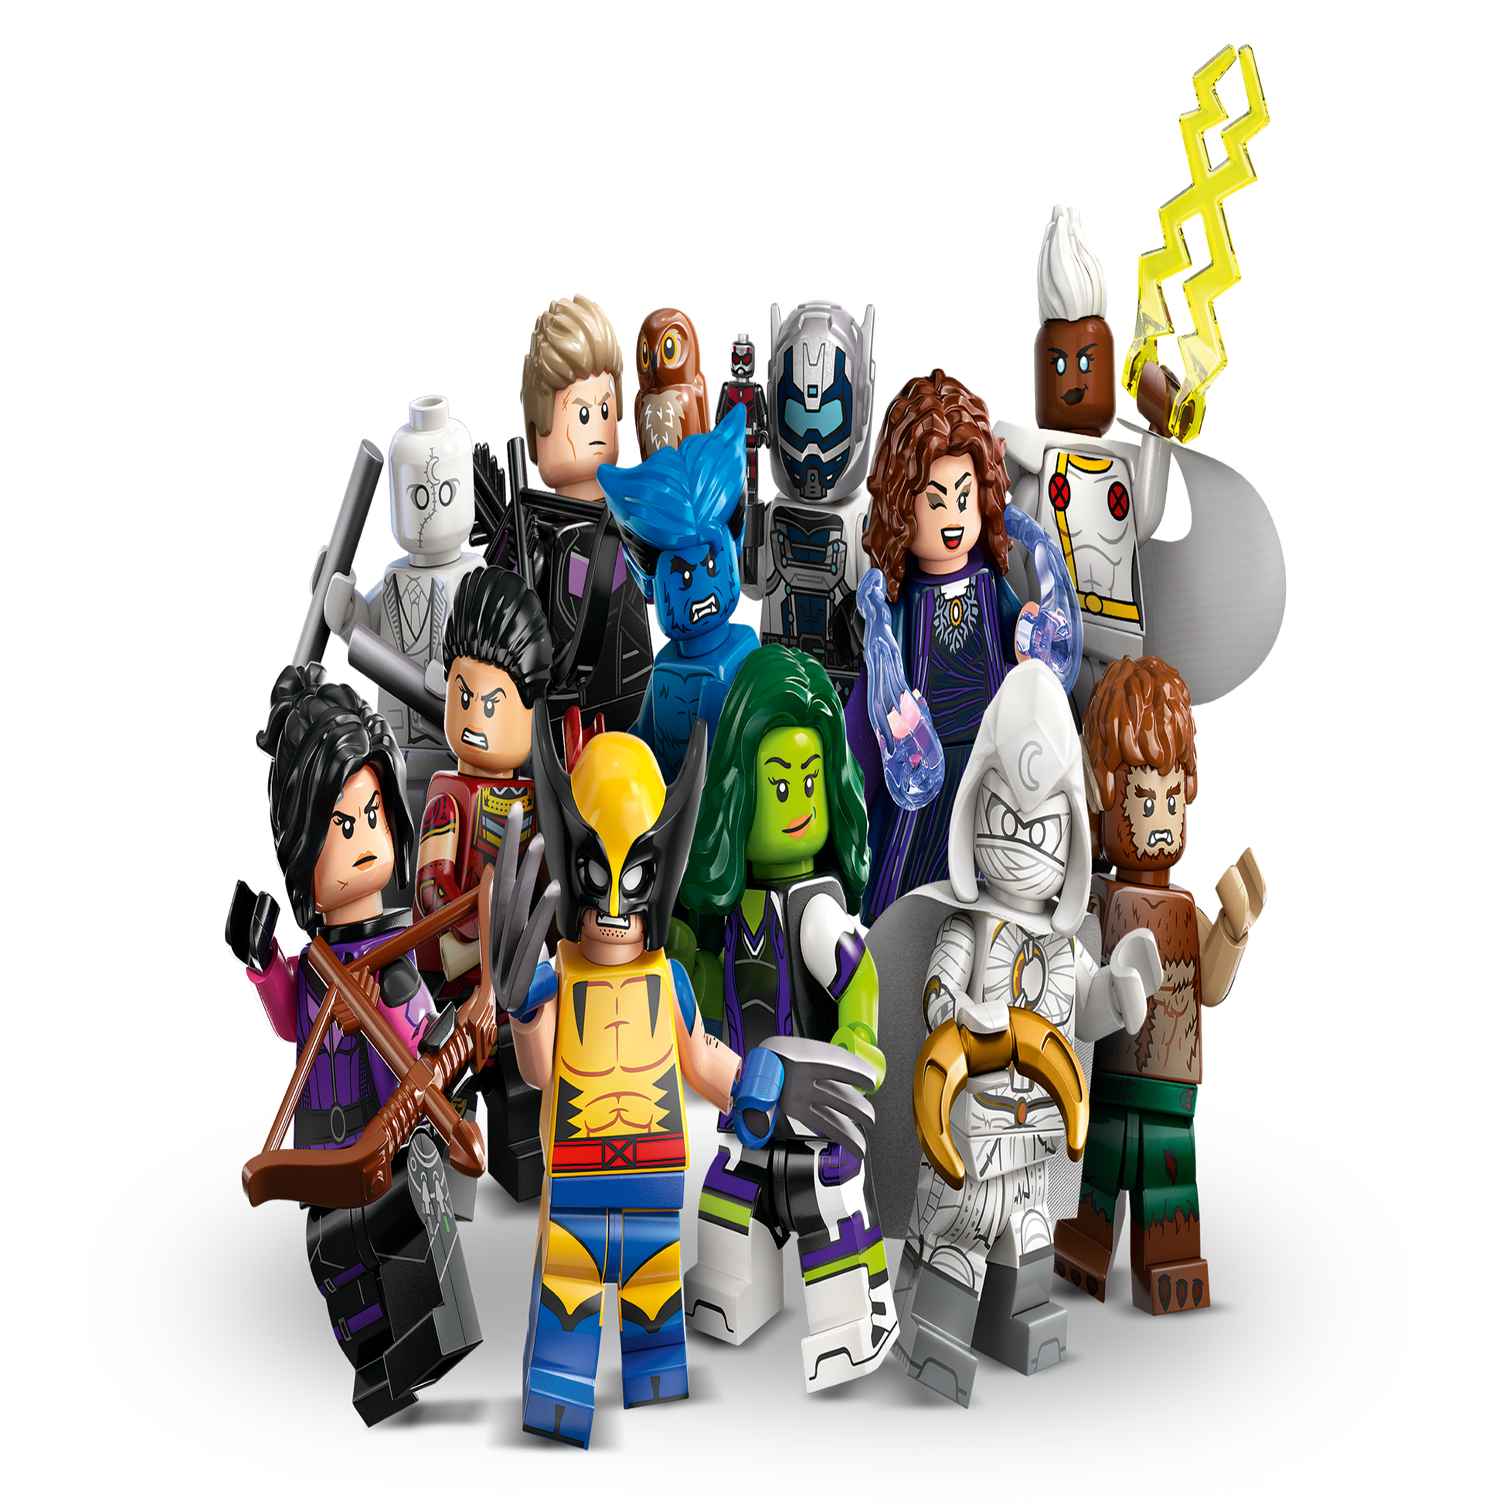 LEGO Marvel Super Heroes 3: Hawkeye (Kate Bishop)